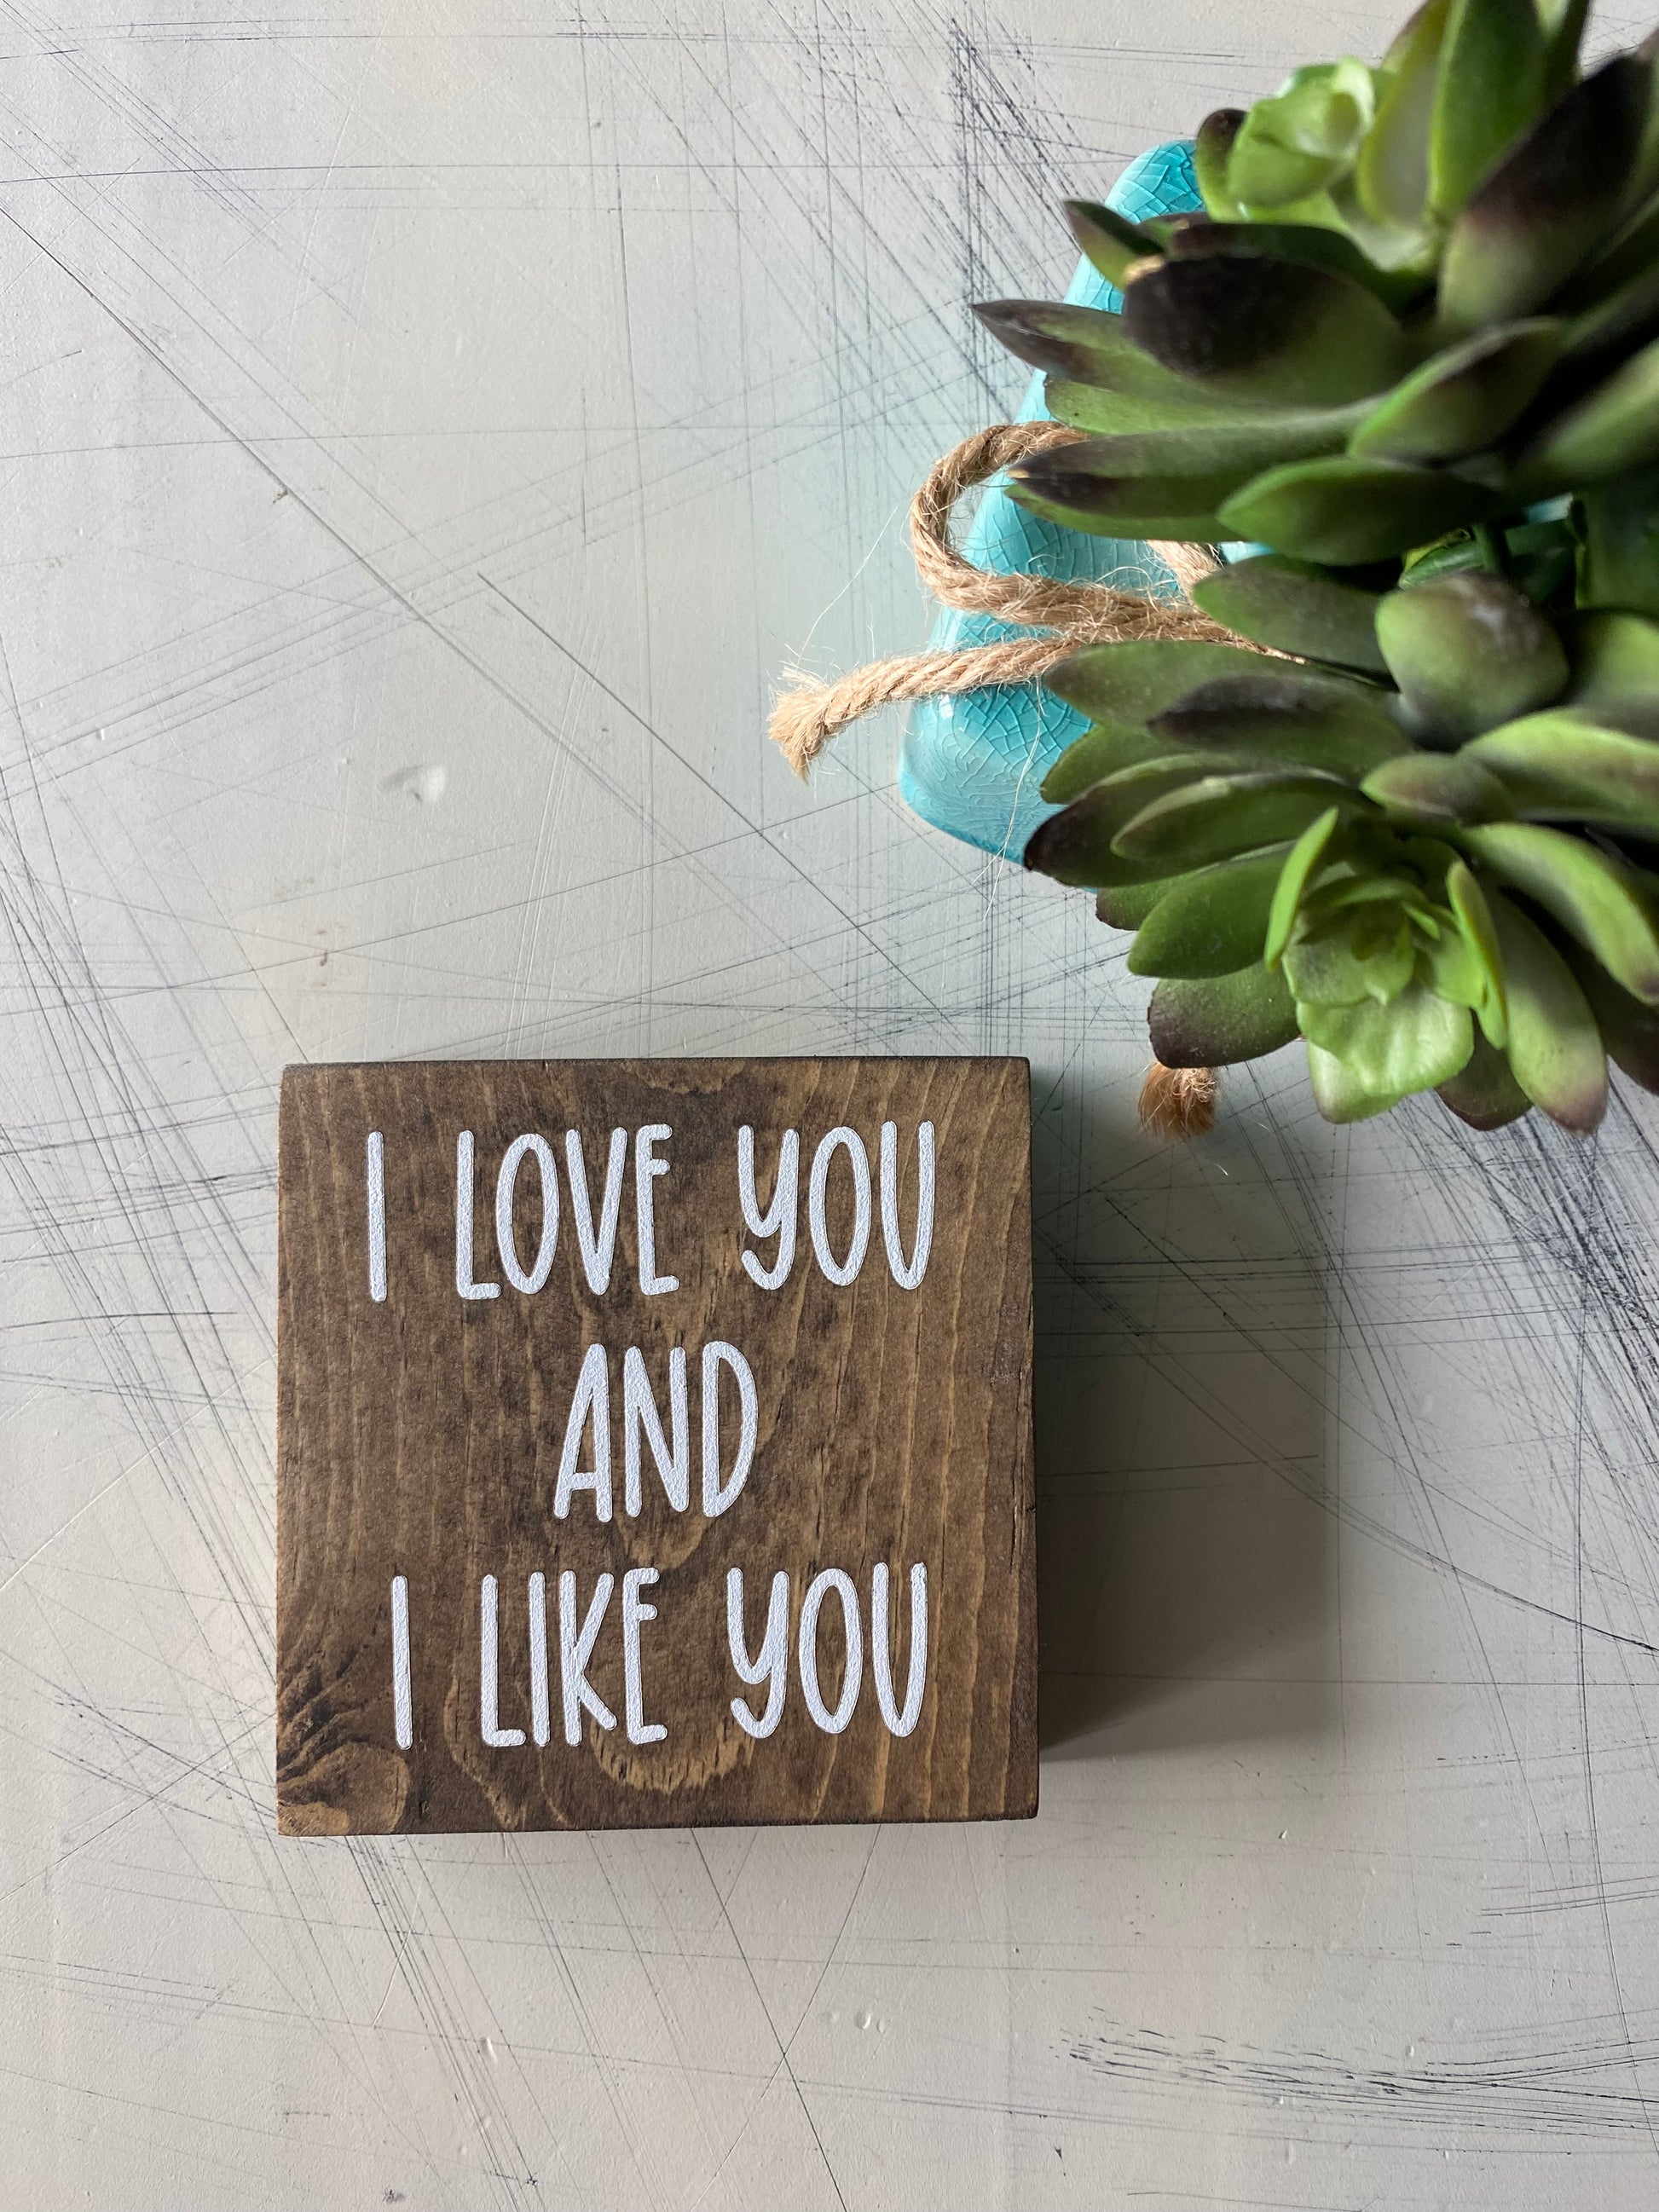 I love you and I like you - Novotny Designs handmade mini wood sign